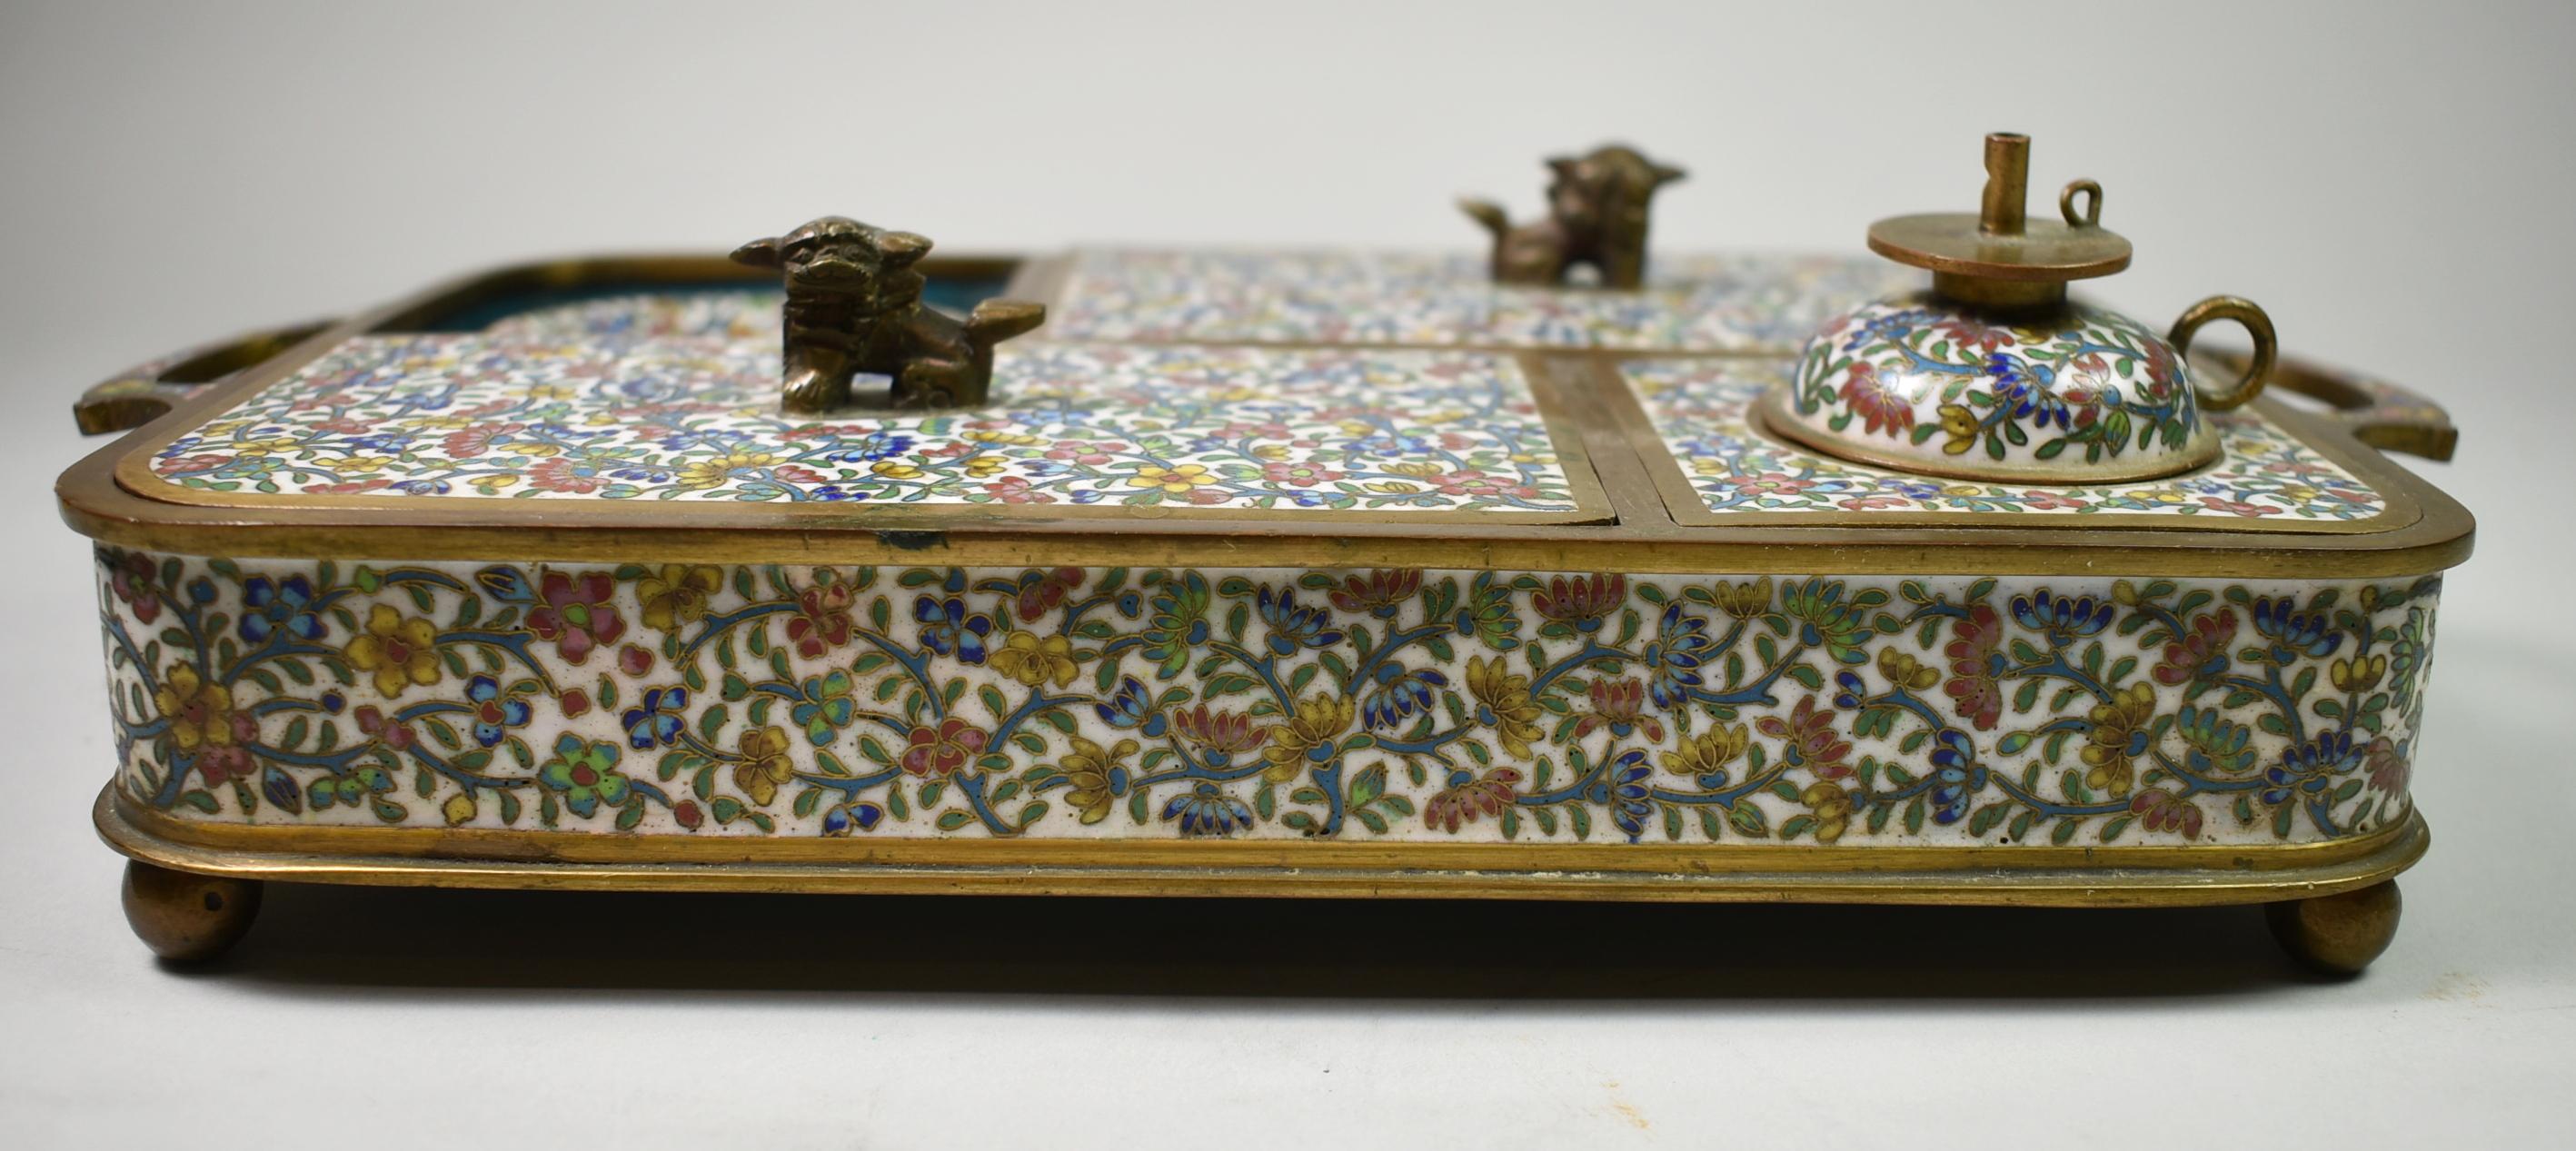 Chinesische Qing Opium Caddy Set umfasst Brenner und Tablett mit 6 Schalen. Cloisonné-Fassung in Bronze mit blauer Emaille im Inneren, Griff aus Fohlenhund und Löwe. Kompliziertes florales Muster in Blau, Weiß, Rot und Gelb. 